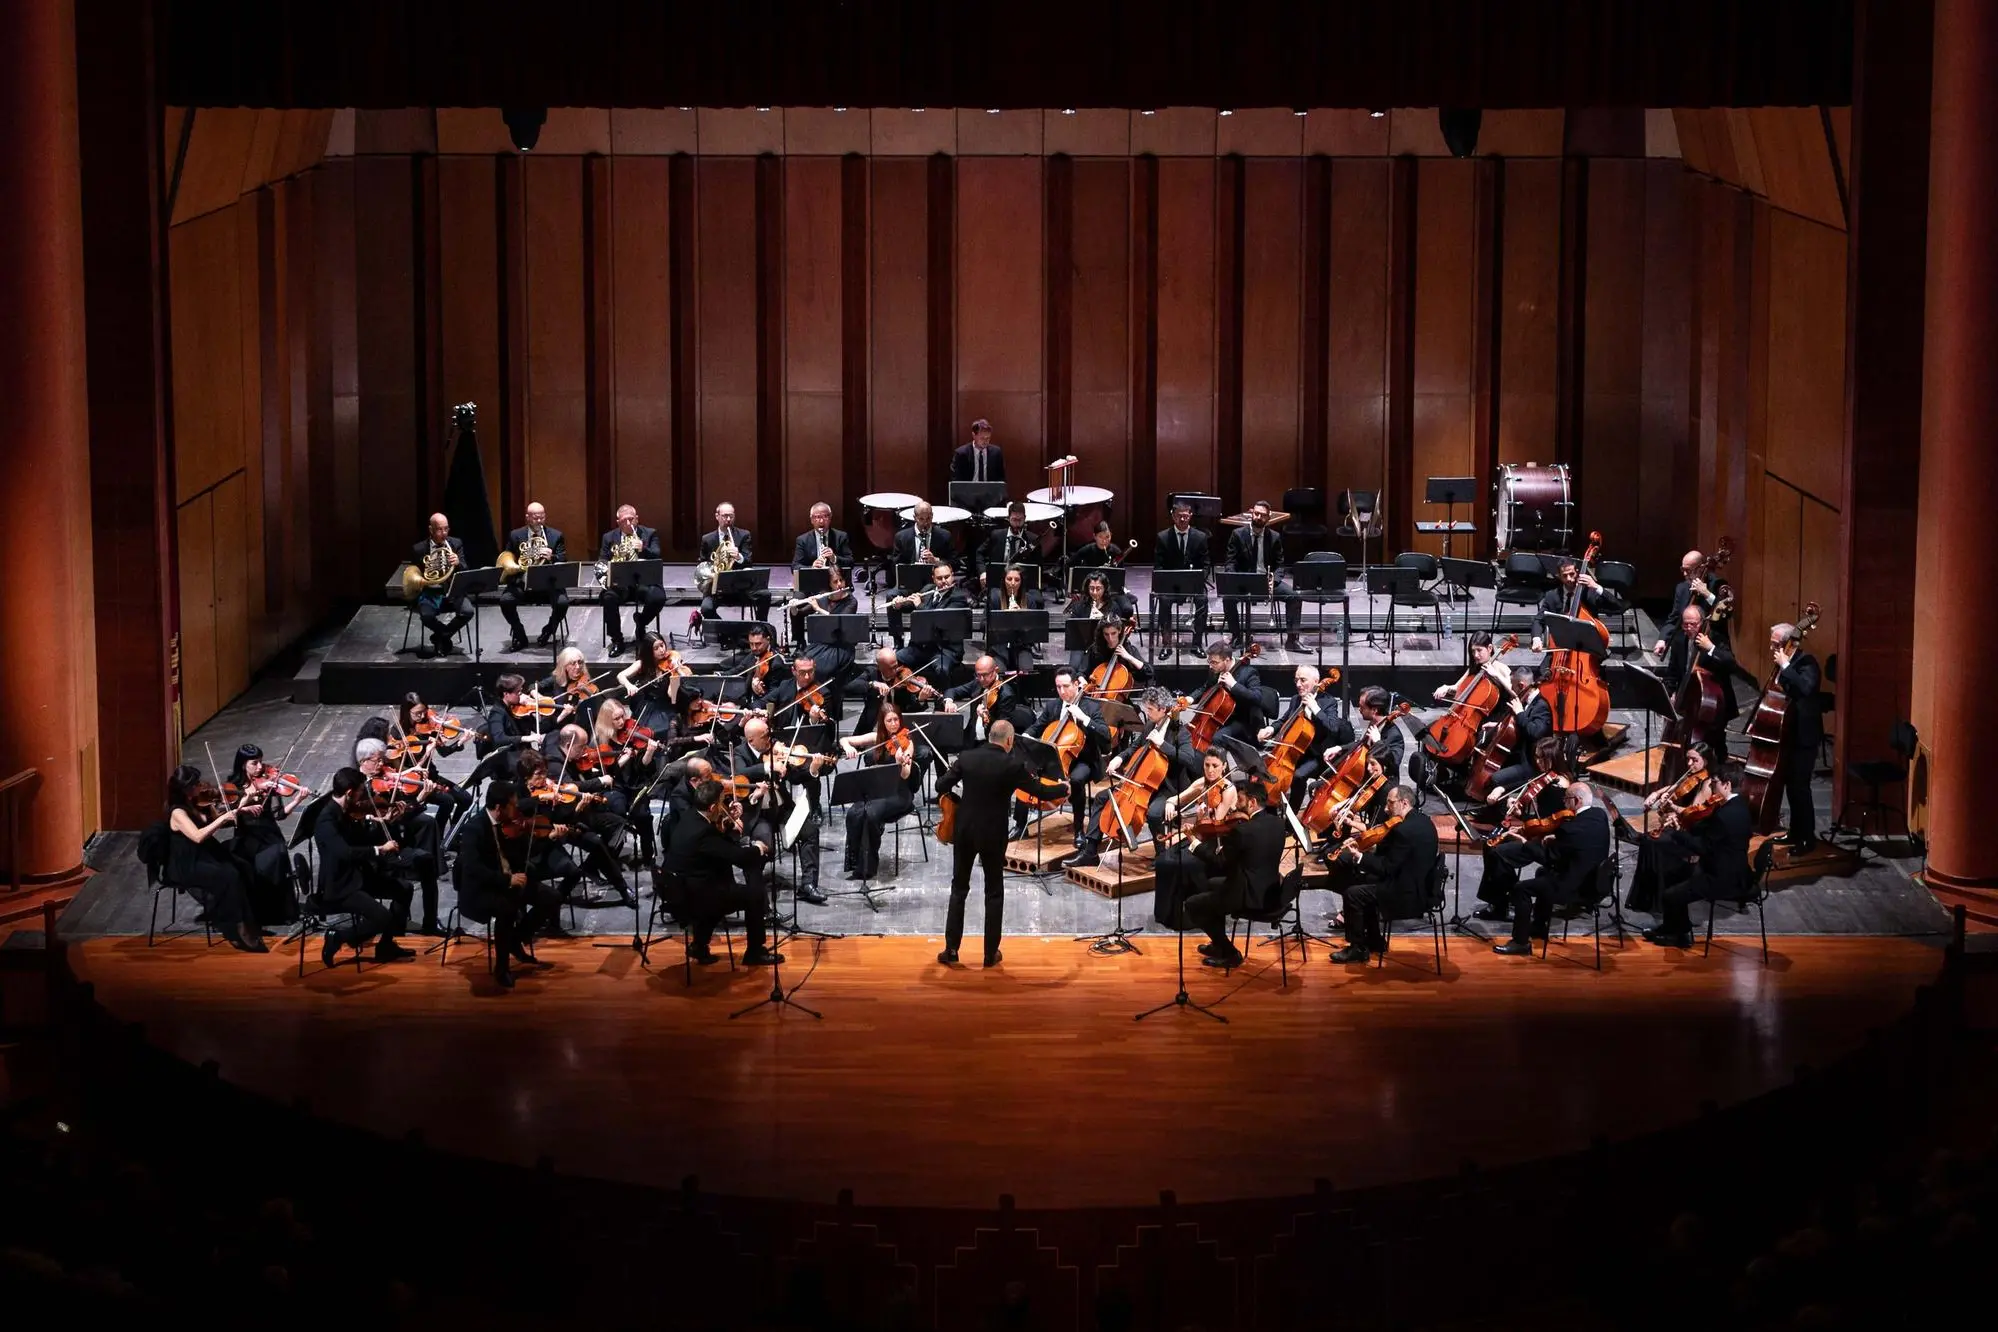 Quarta dirige l'orchestra de de Carolis (foto concessa- E. Casula)